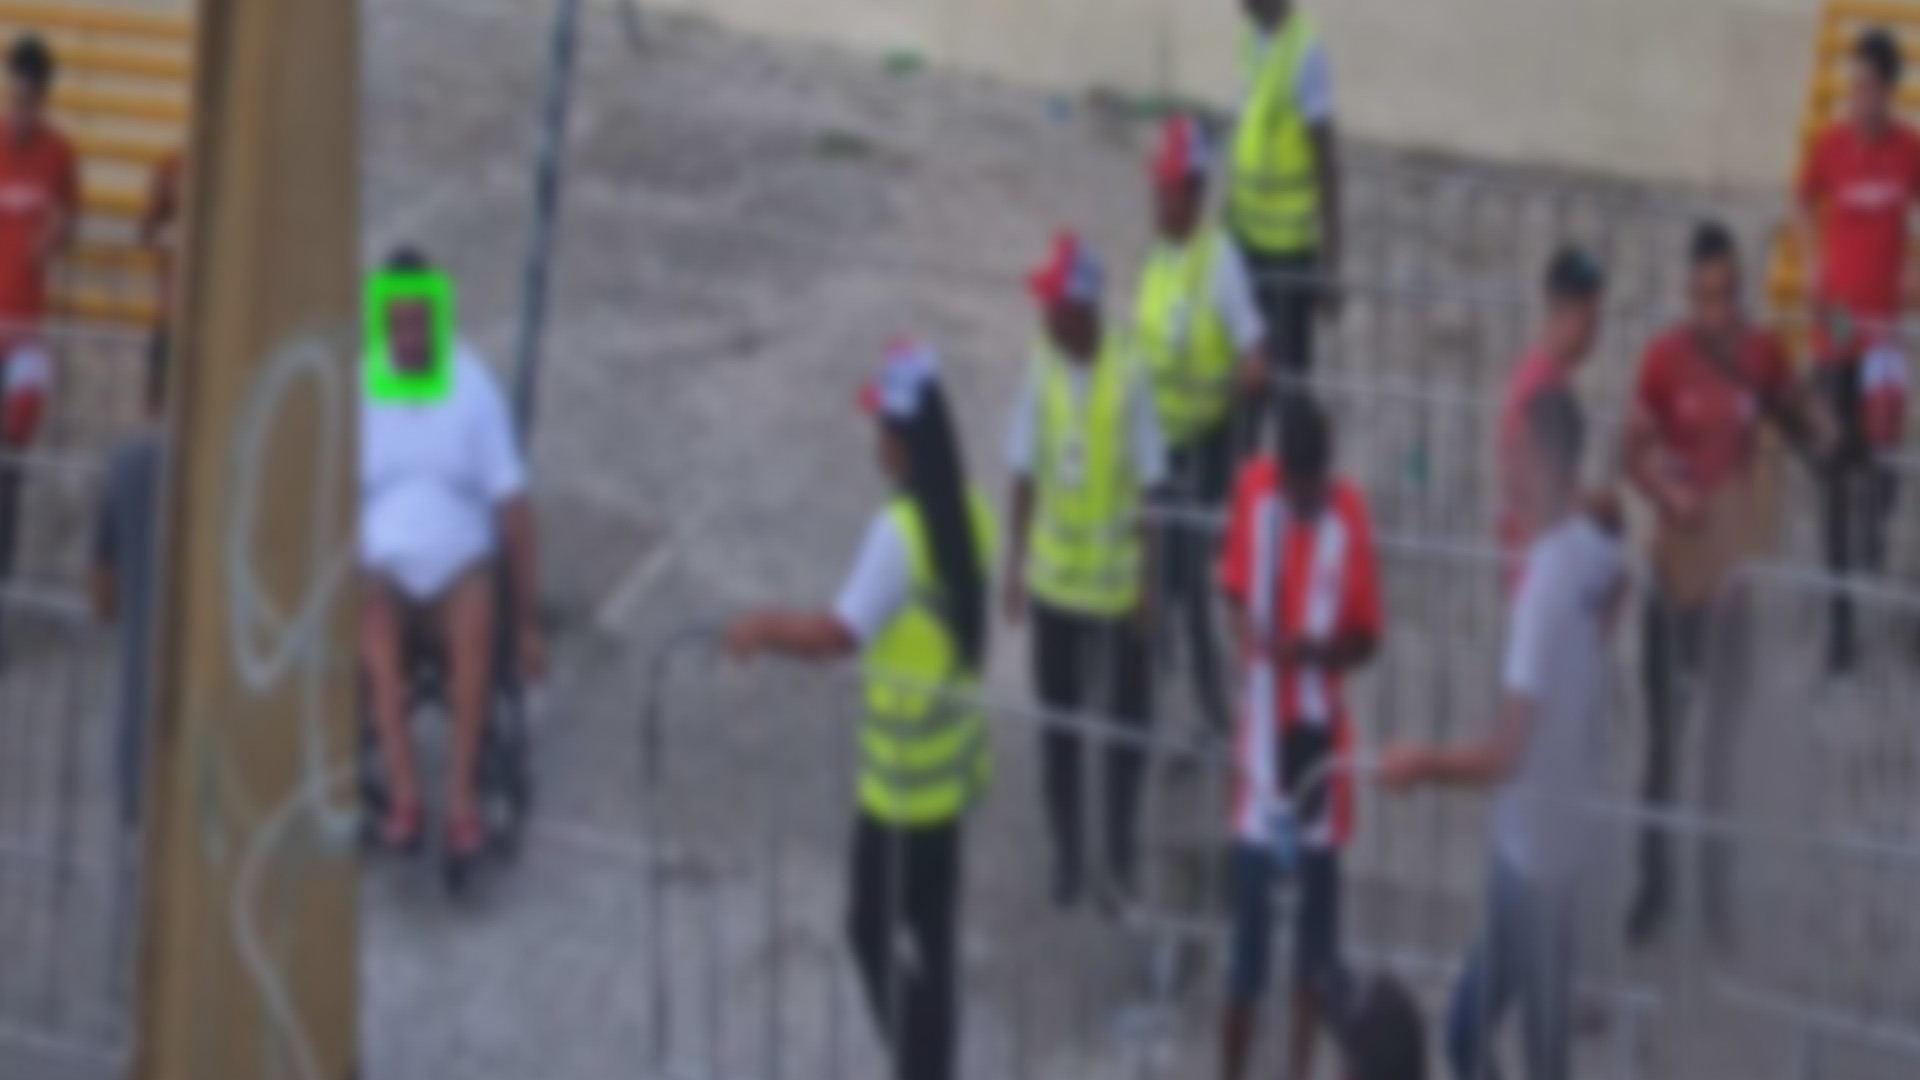 Após reconhecimento facial, homem é preso enquanto assistia à partida de futebol em Aracaju 